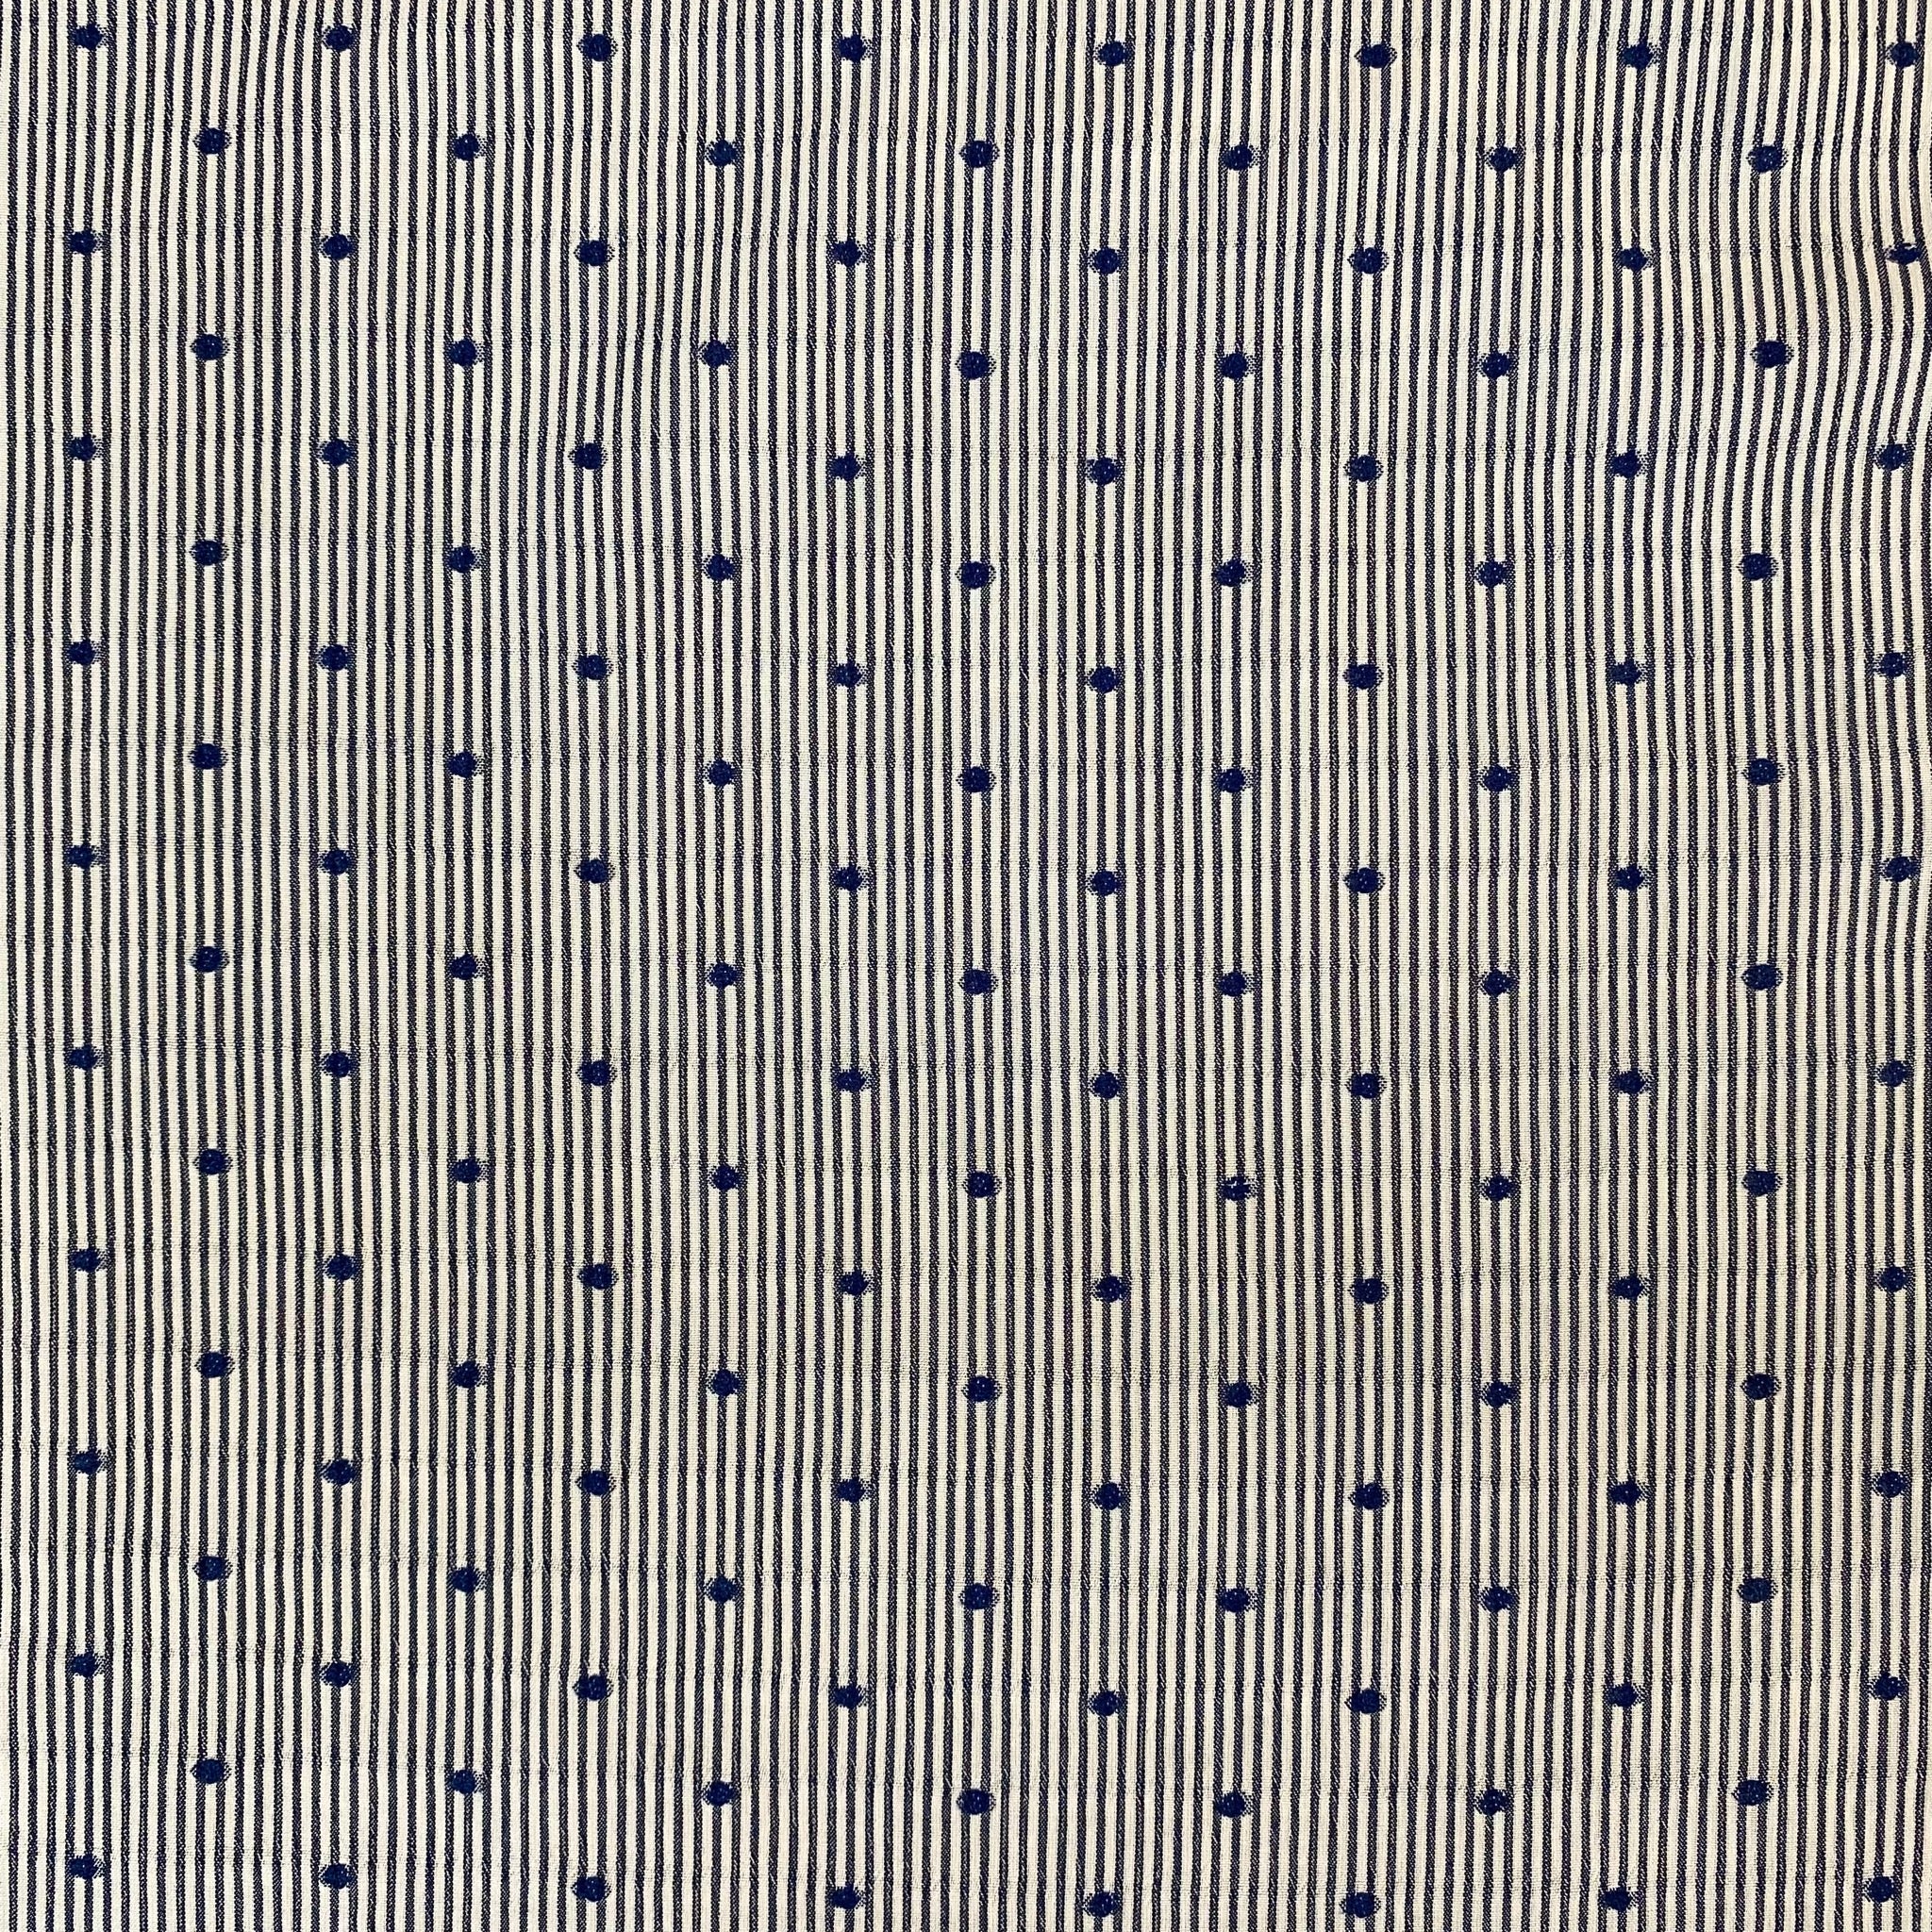 Polyester - Stripy Spots